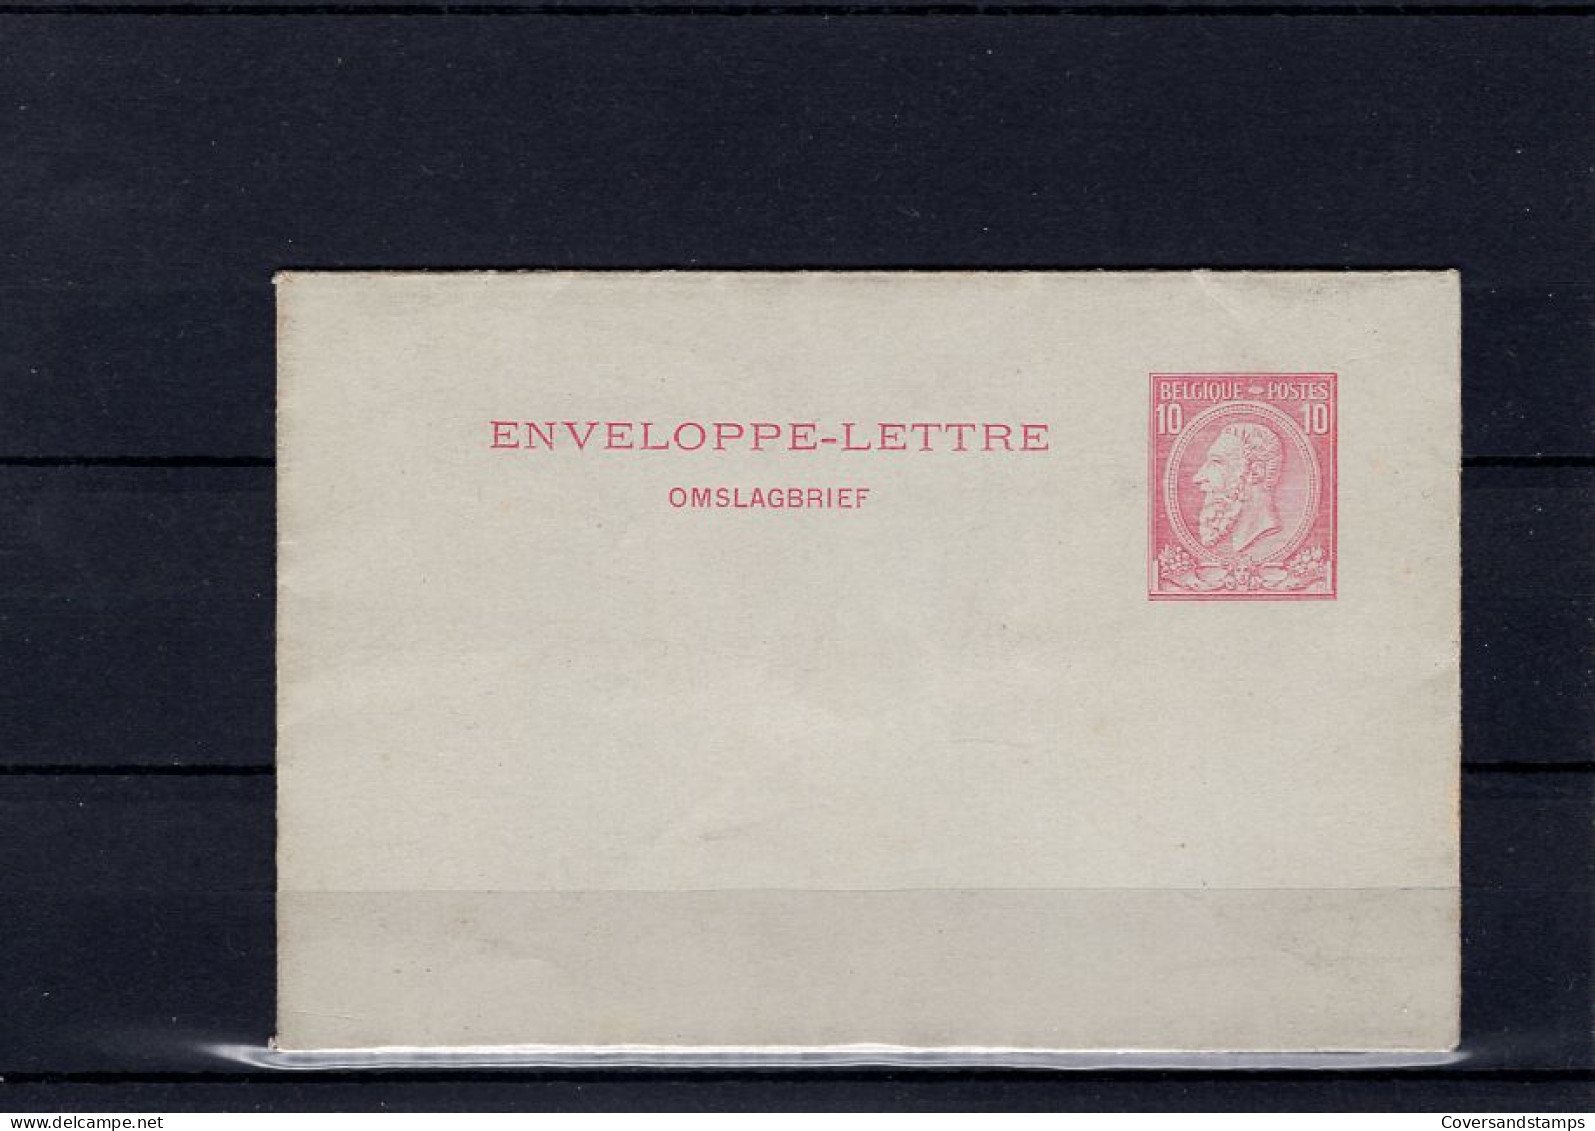  België : Omslagbrief - Enveloppes-lettres